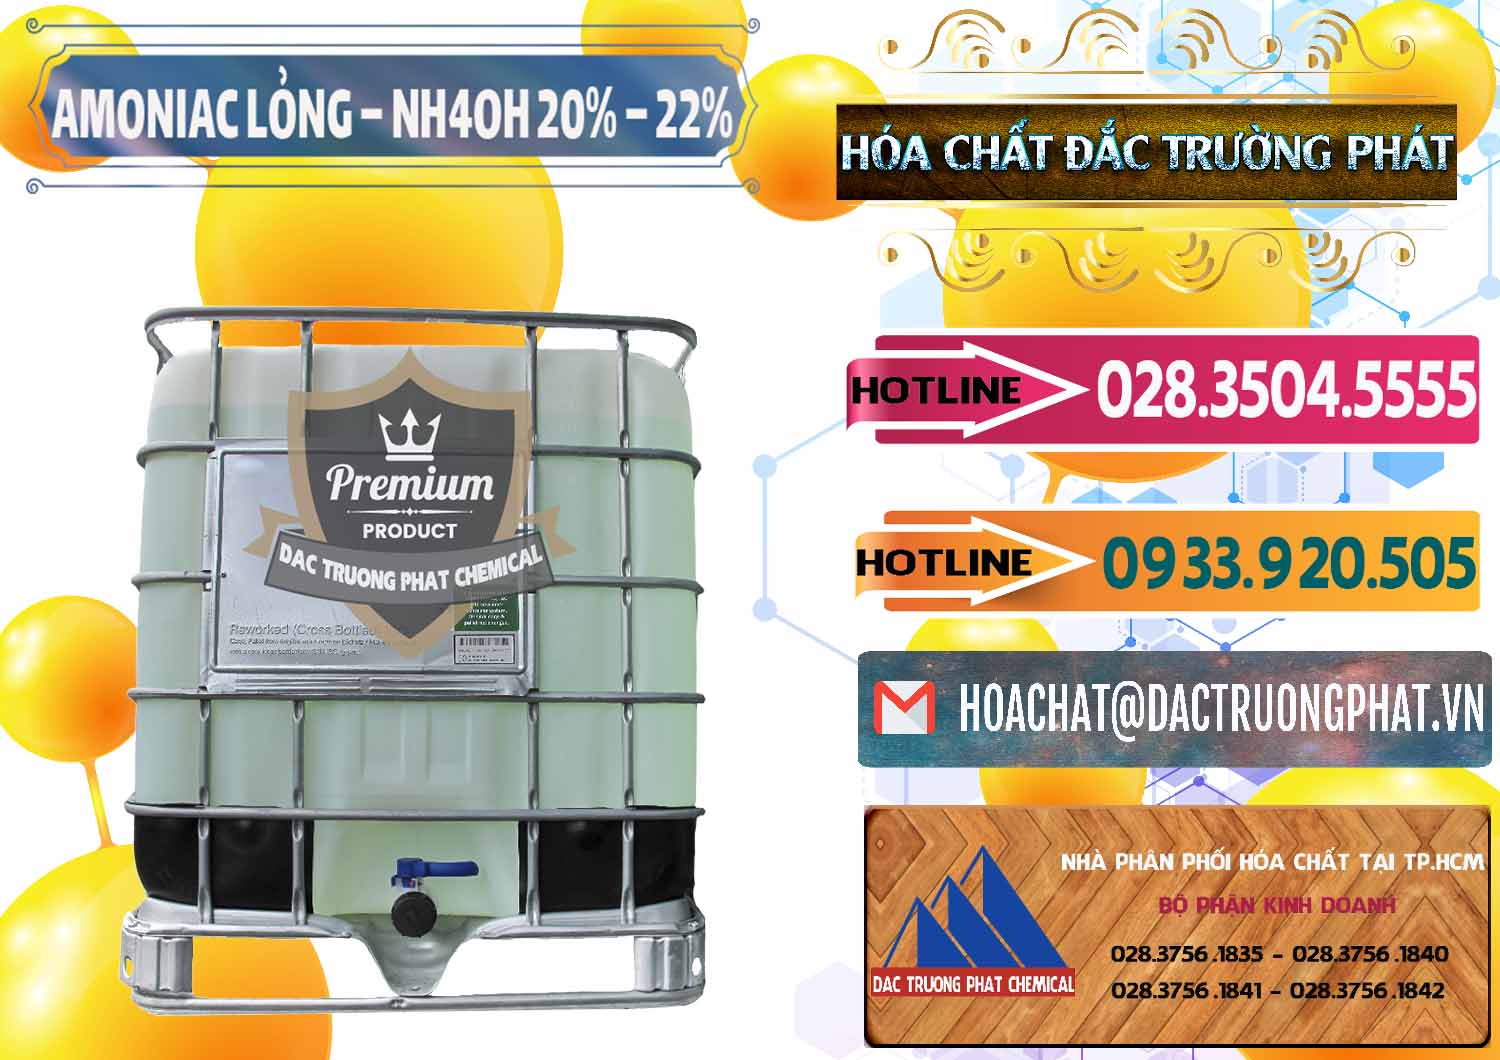 Đơn vị kinh doanh và cung cấp Amoniac Lỏng – NH4OH 20% – 22% Việt Nam - 0185 - Phân phối và cung cấp hóa chất tại TP.HCM - dactruongphat.vn